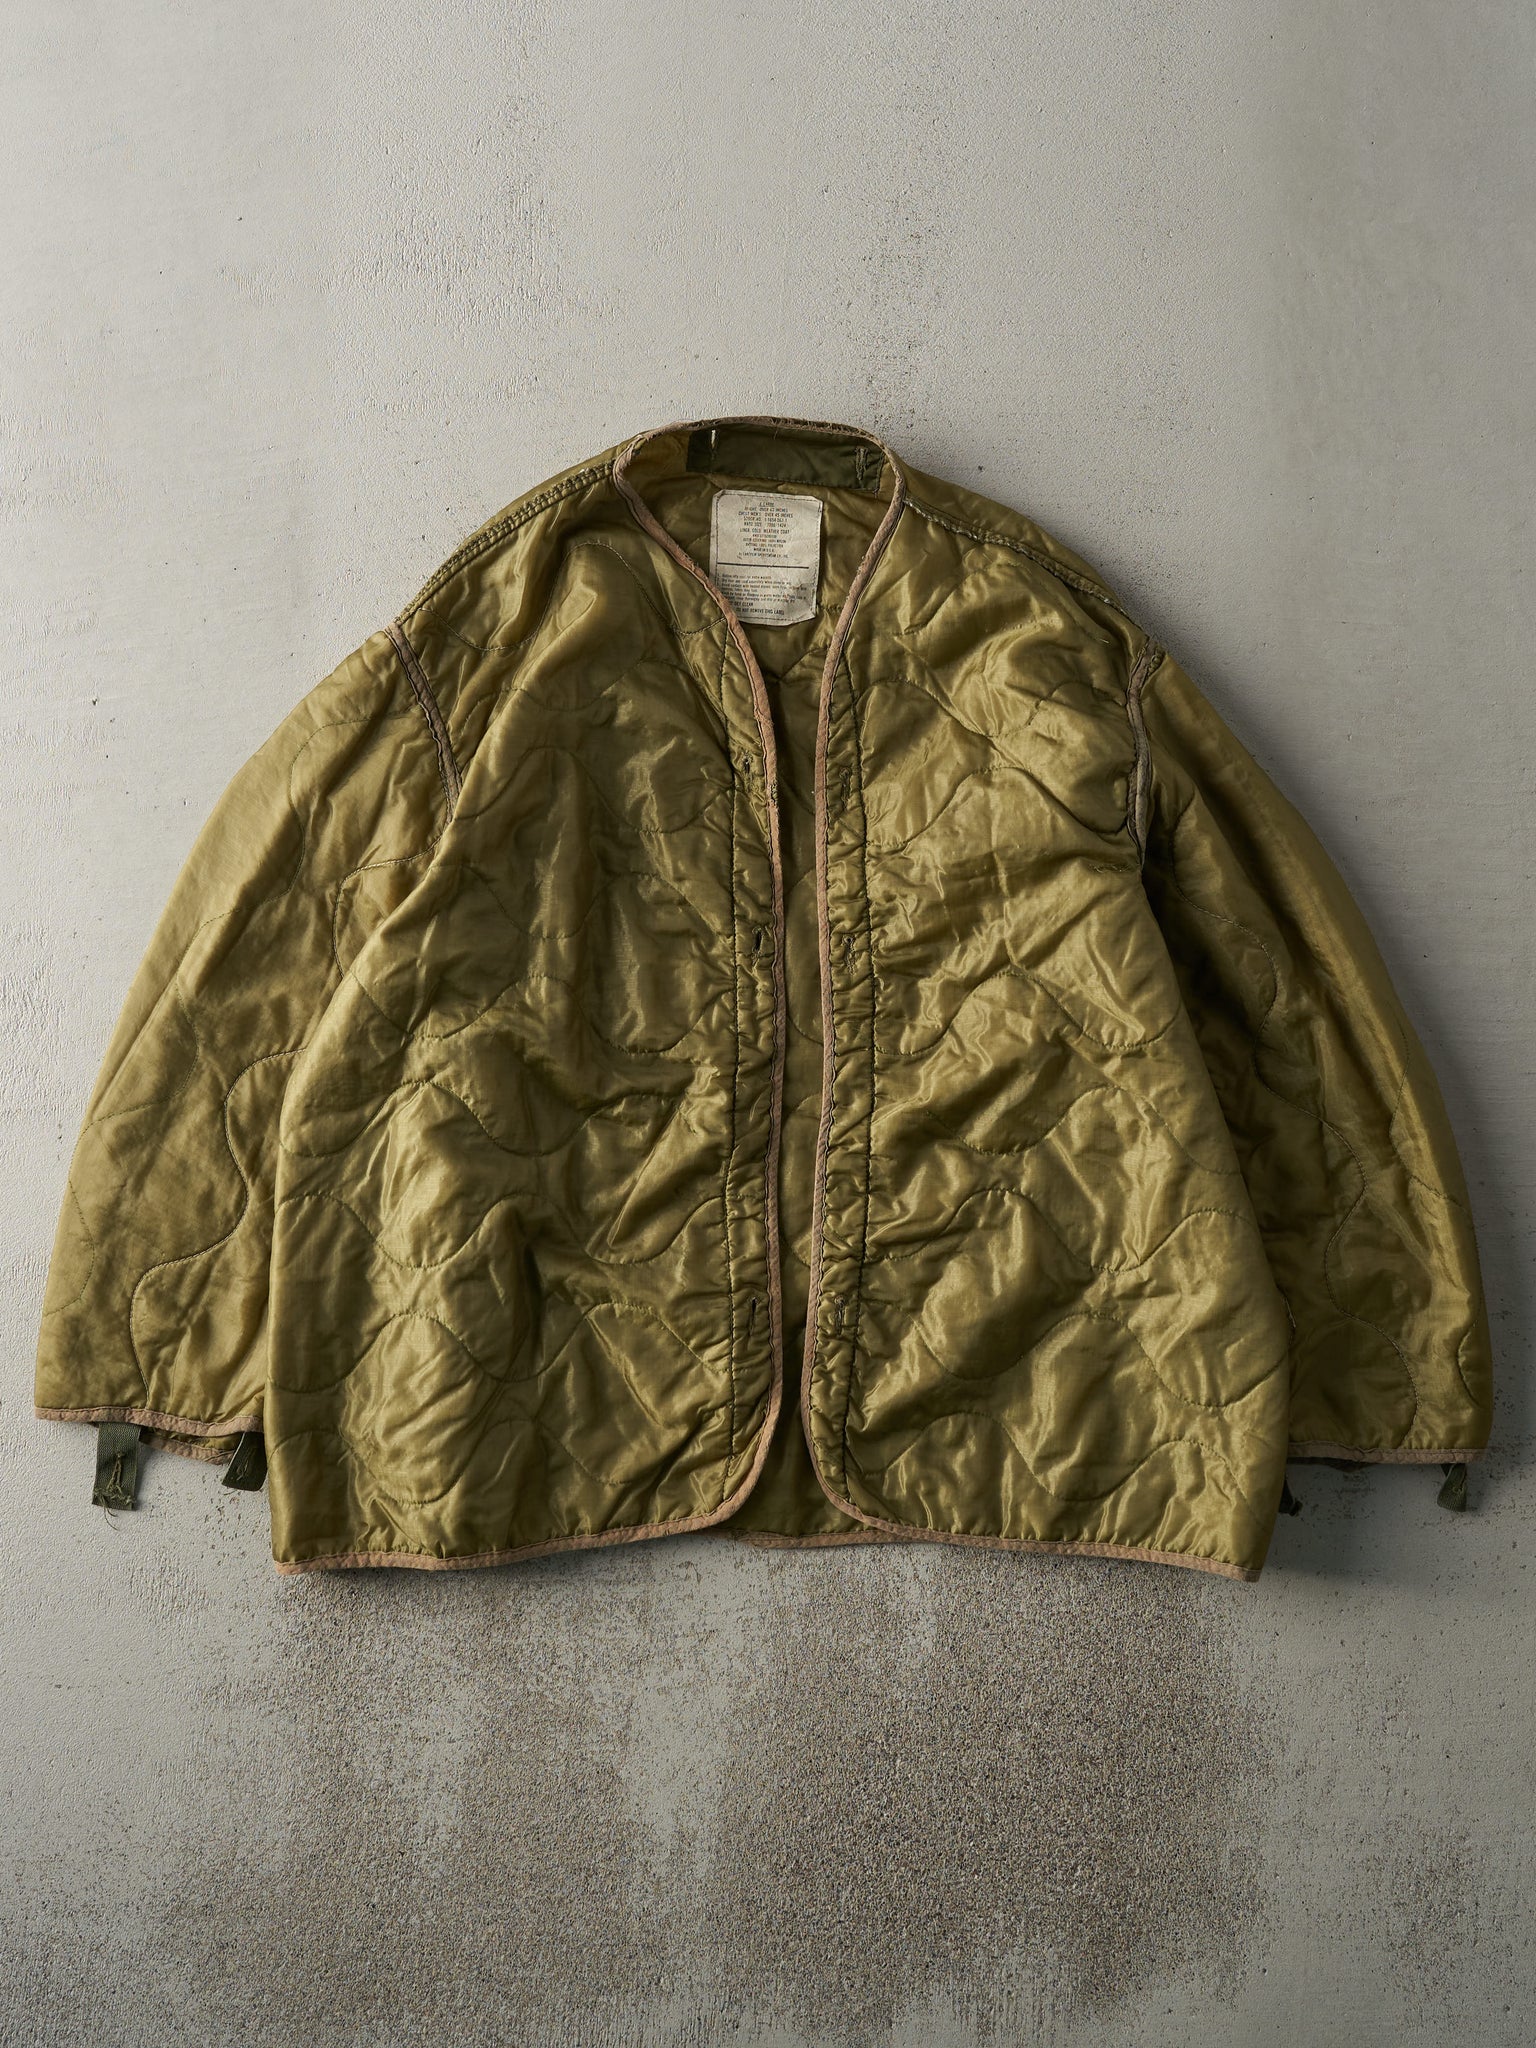 Vintage 90s Olive Green Army Liner Jacket (L)